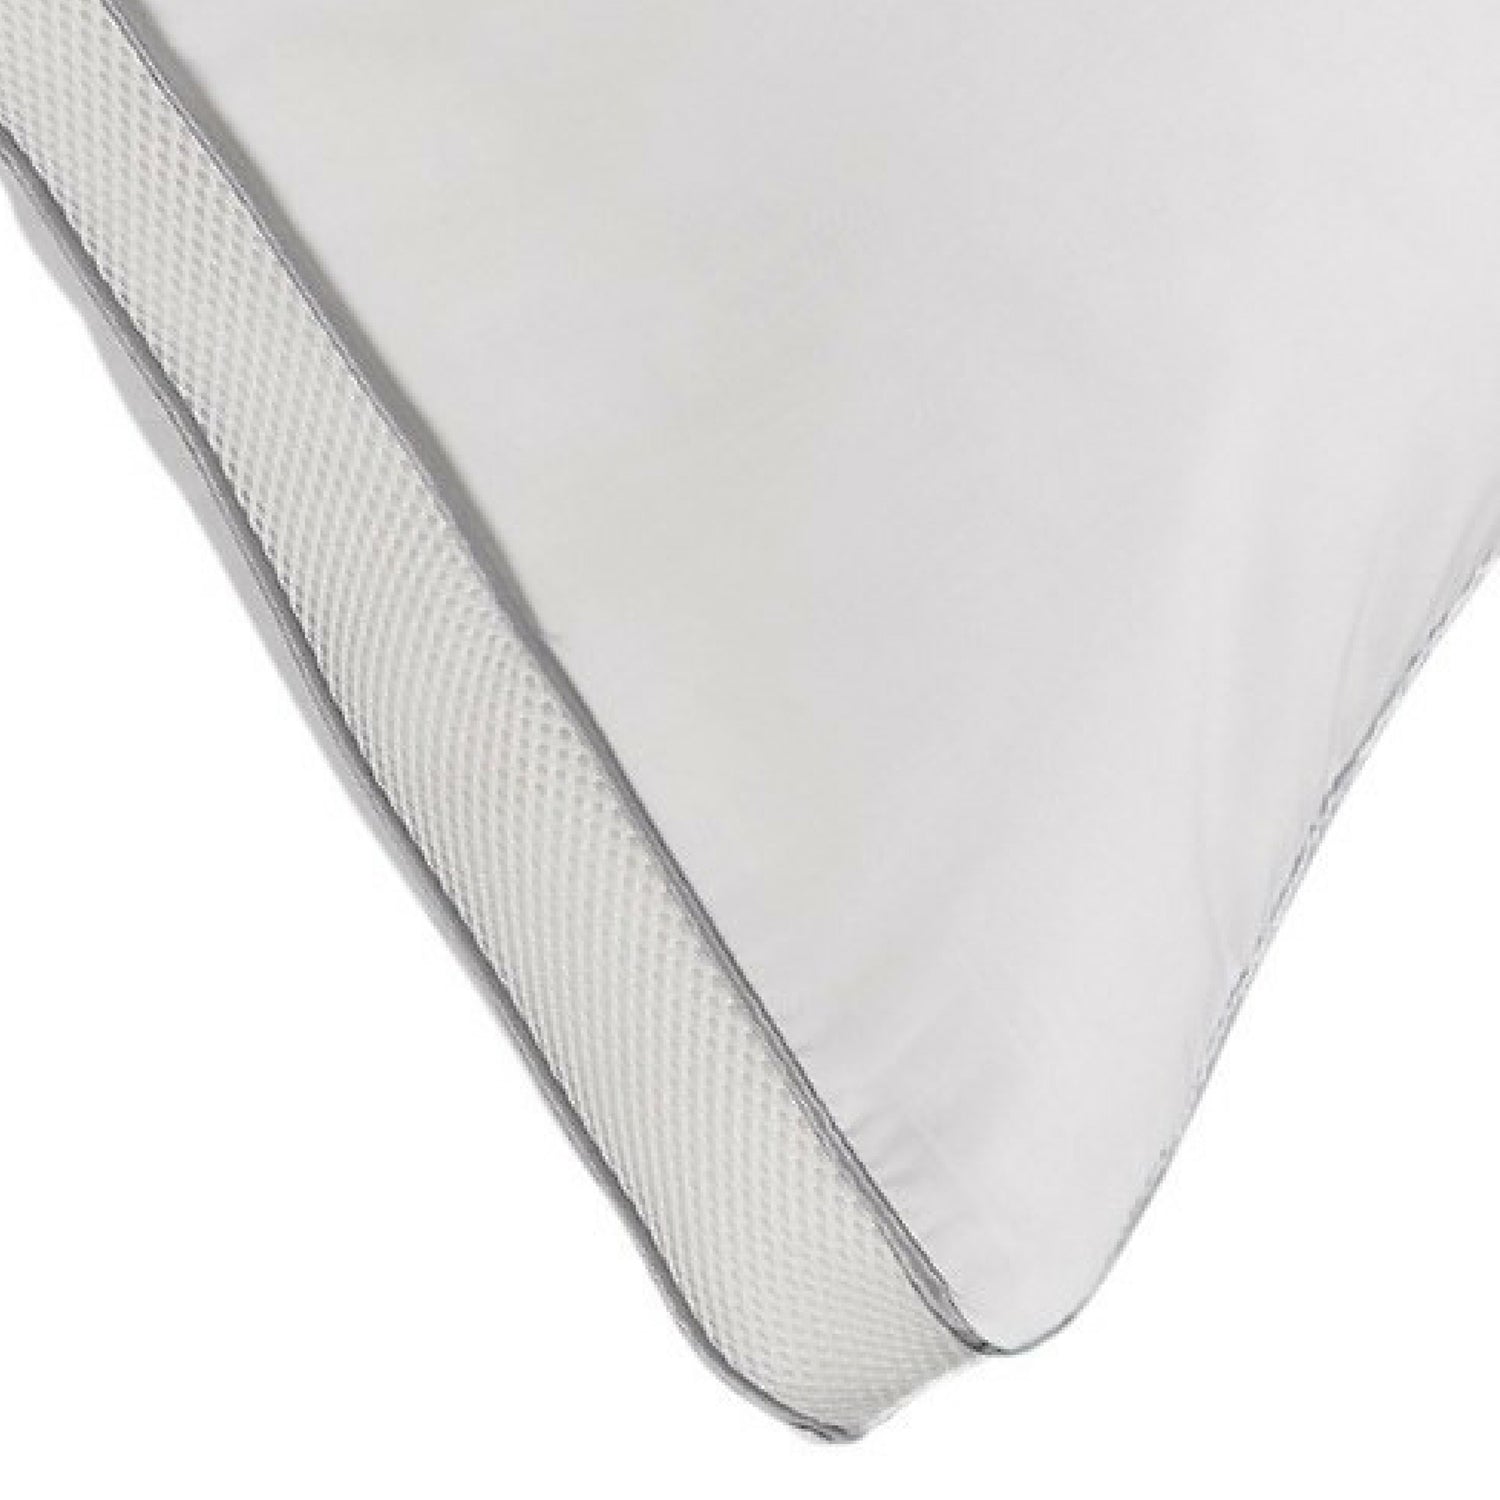 MEMORY FIBER Pillow 100% Cotton Luxurious Mesh Gusseted Shell All Sleeper Pillow